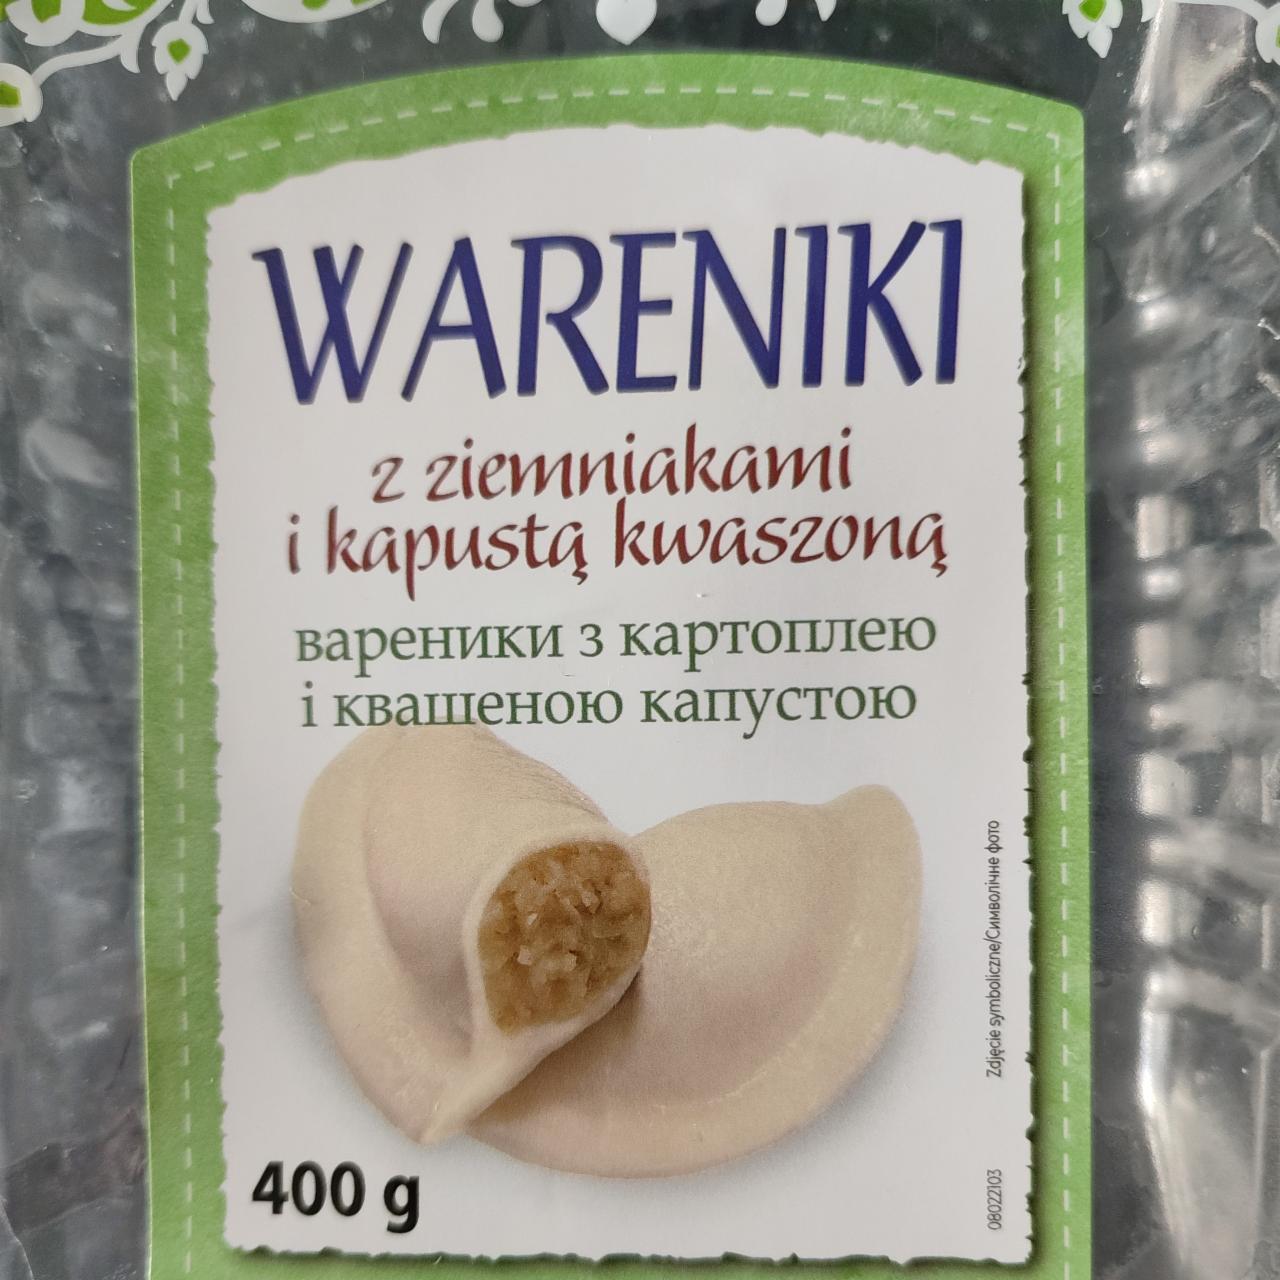 Zdjęcia - Wareniki z ziemniakami i kapustą kwaszoną Virtu